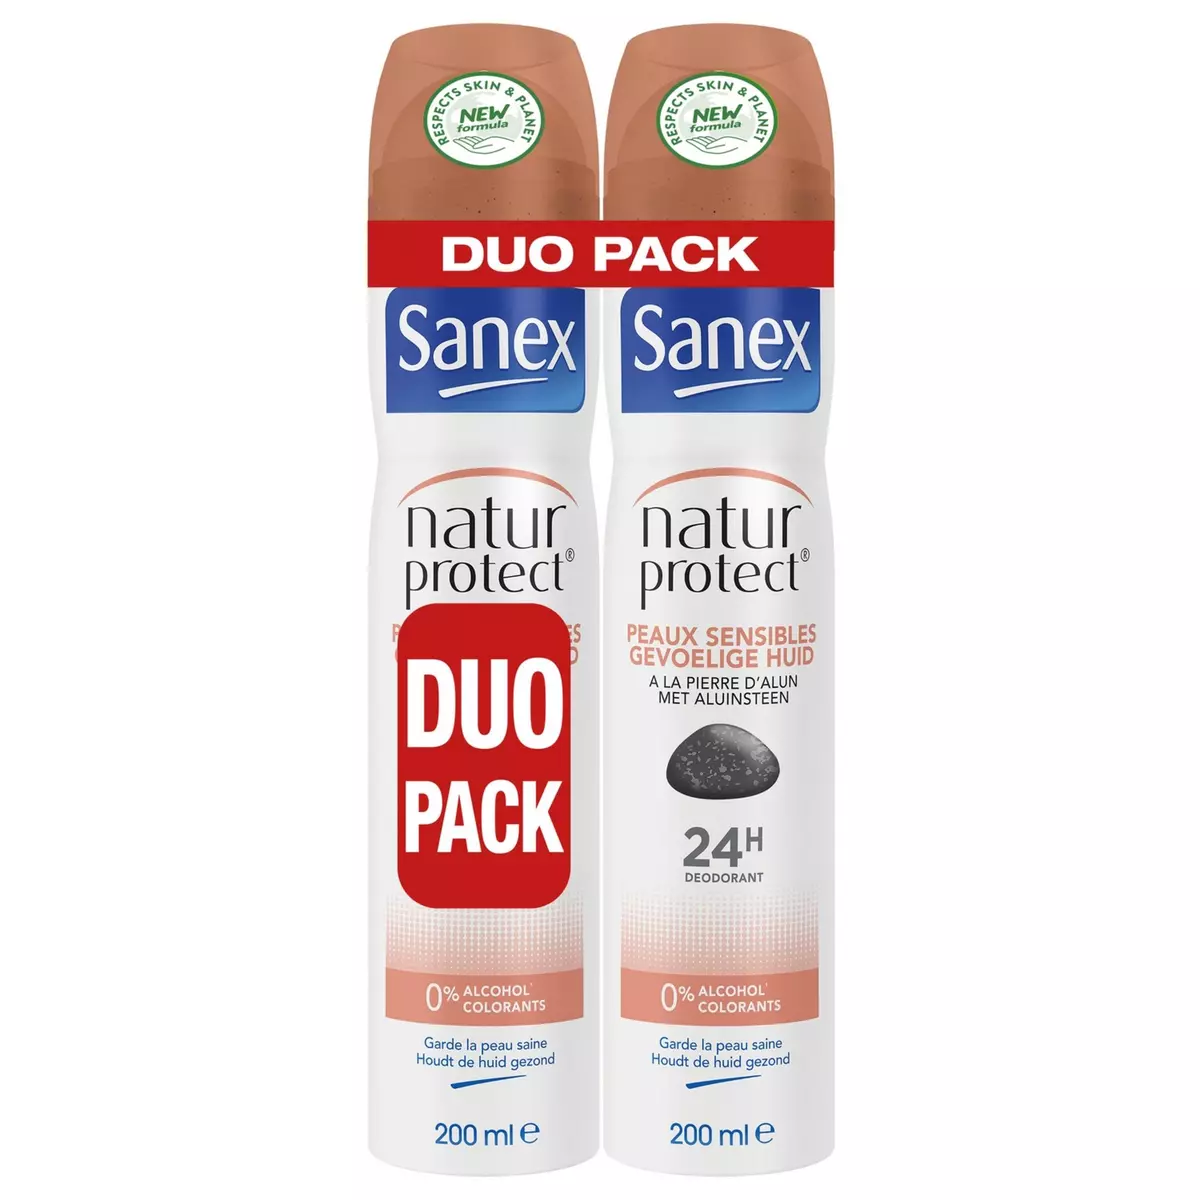 SANEX Natur protect déodorant spray 24h peaux sensibles à la pierre d'alun 2x200ml